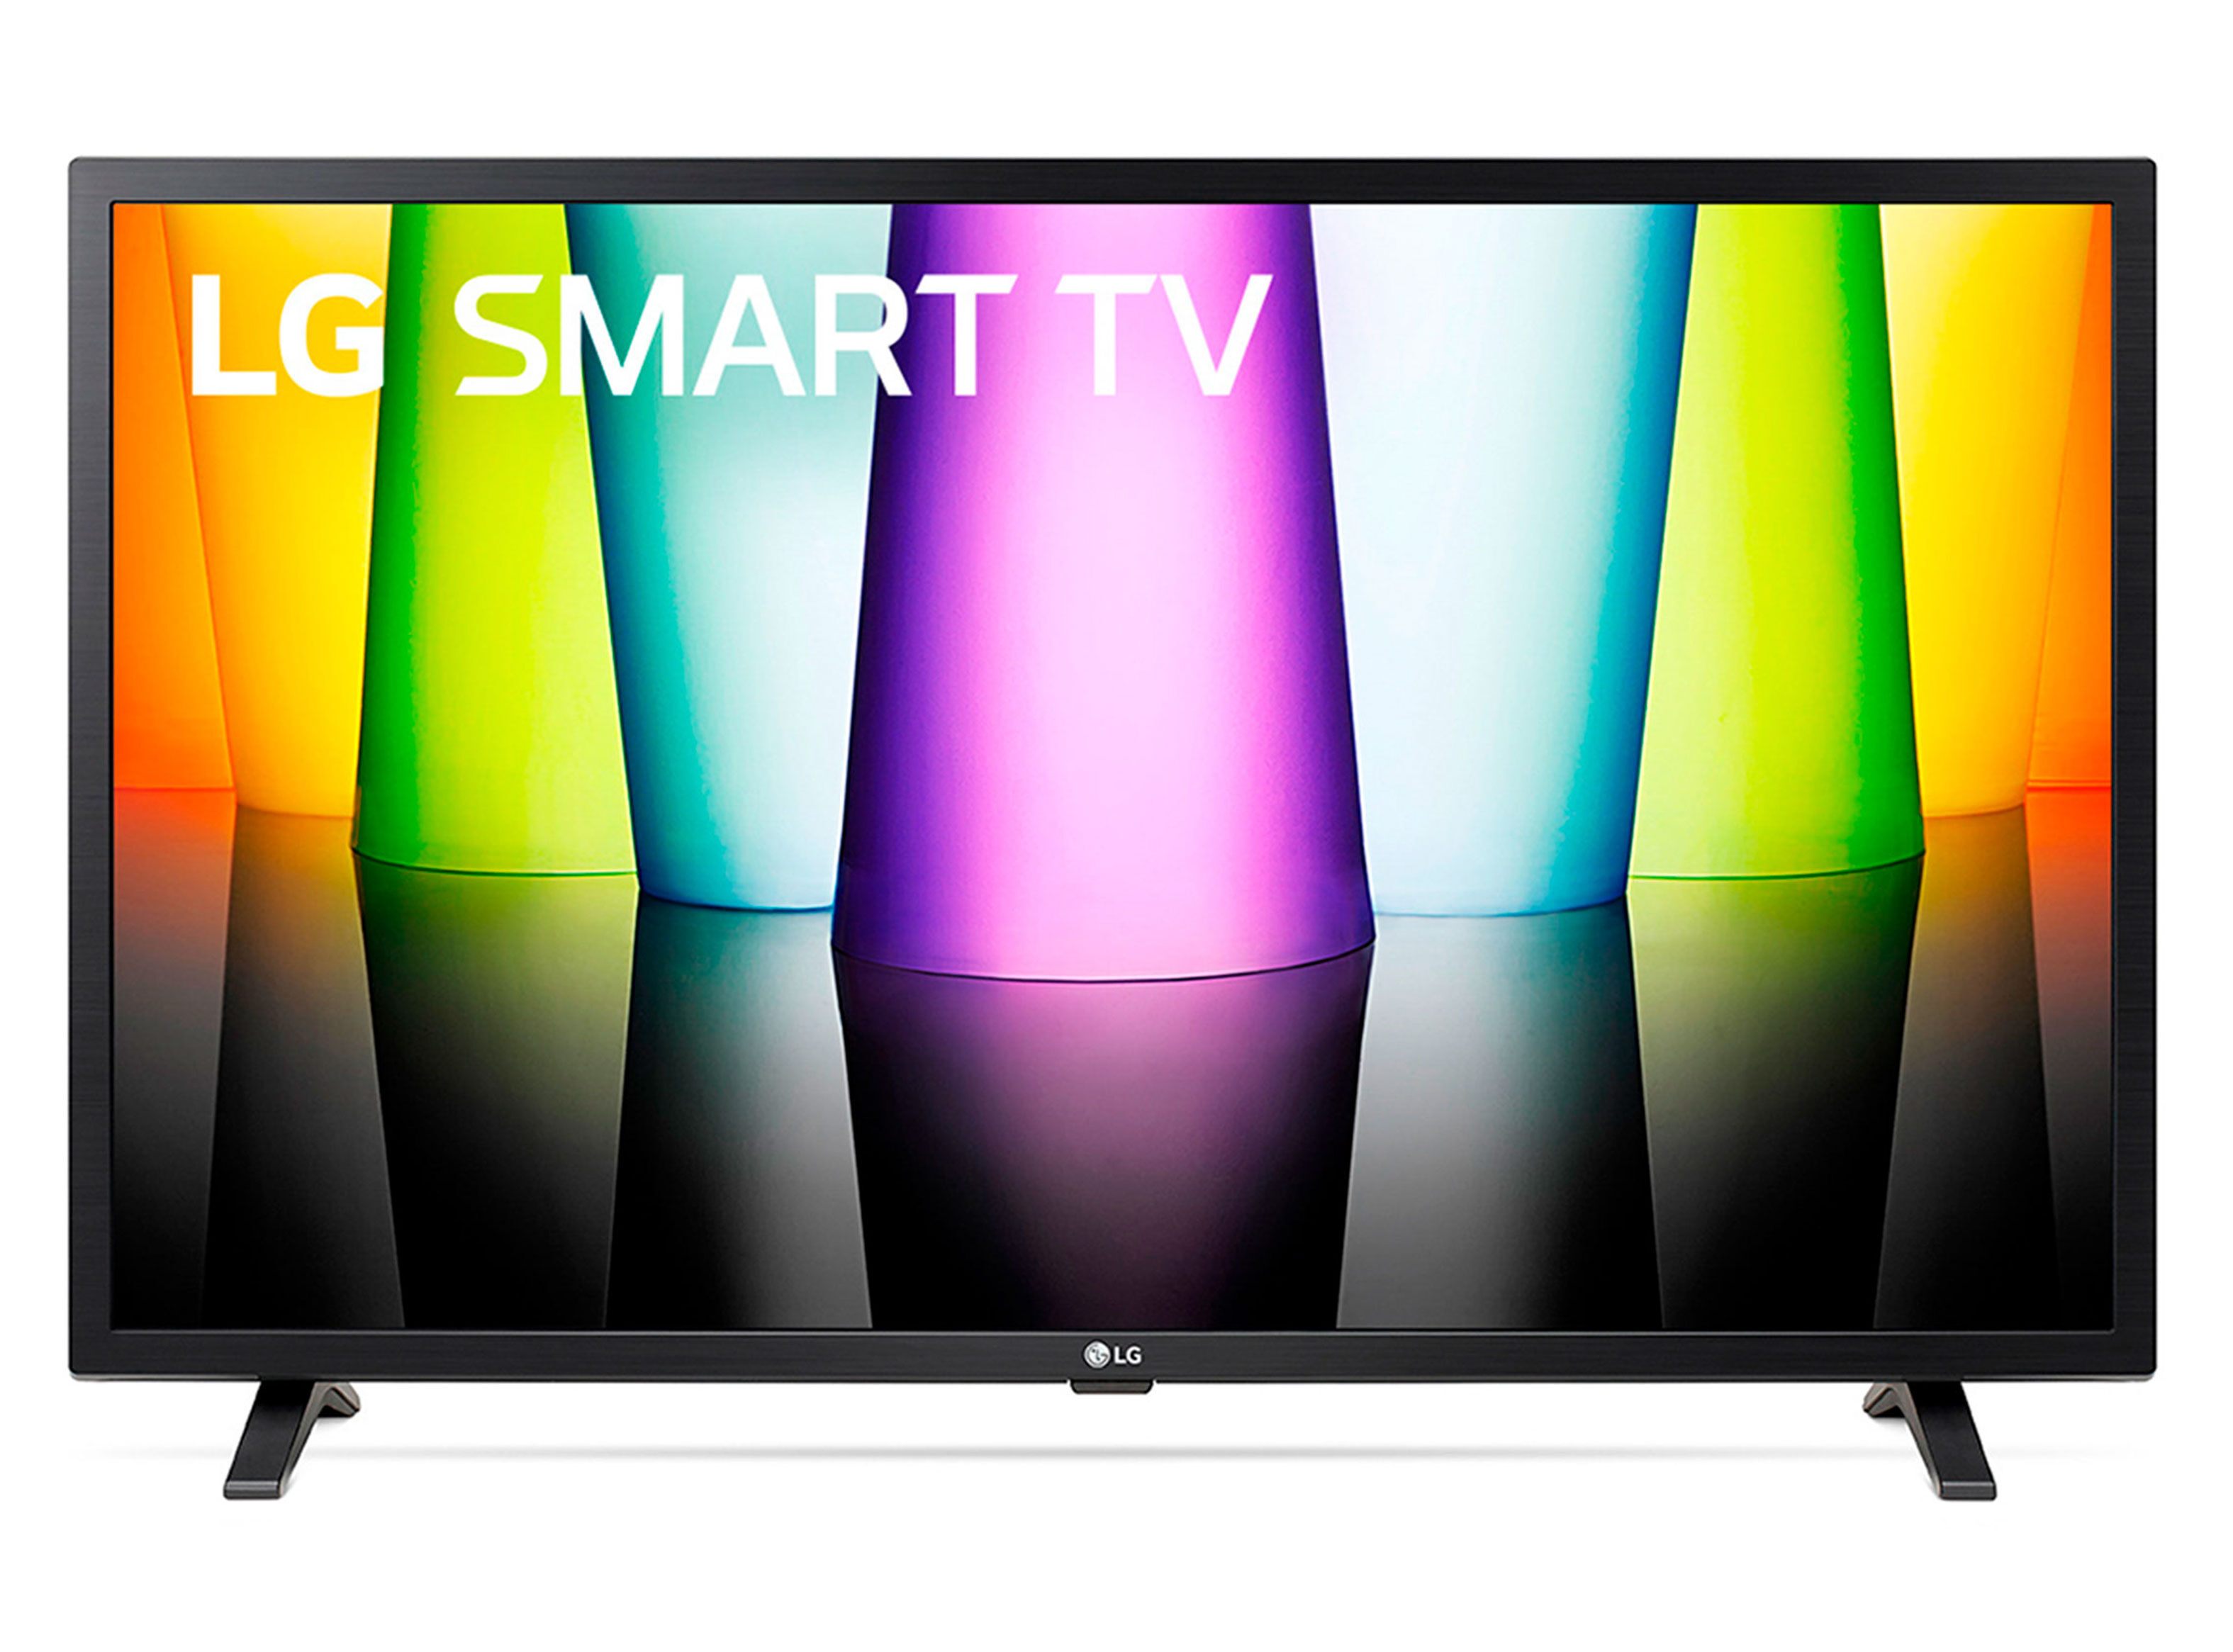 LED Smart TV 32 HD 32LQ630BPSA - Smart TV